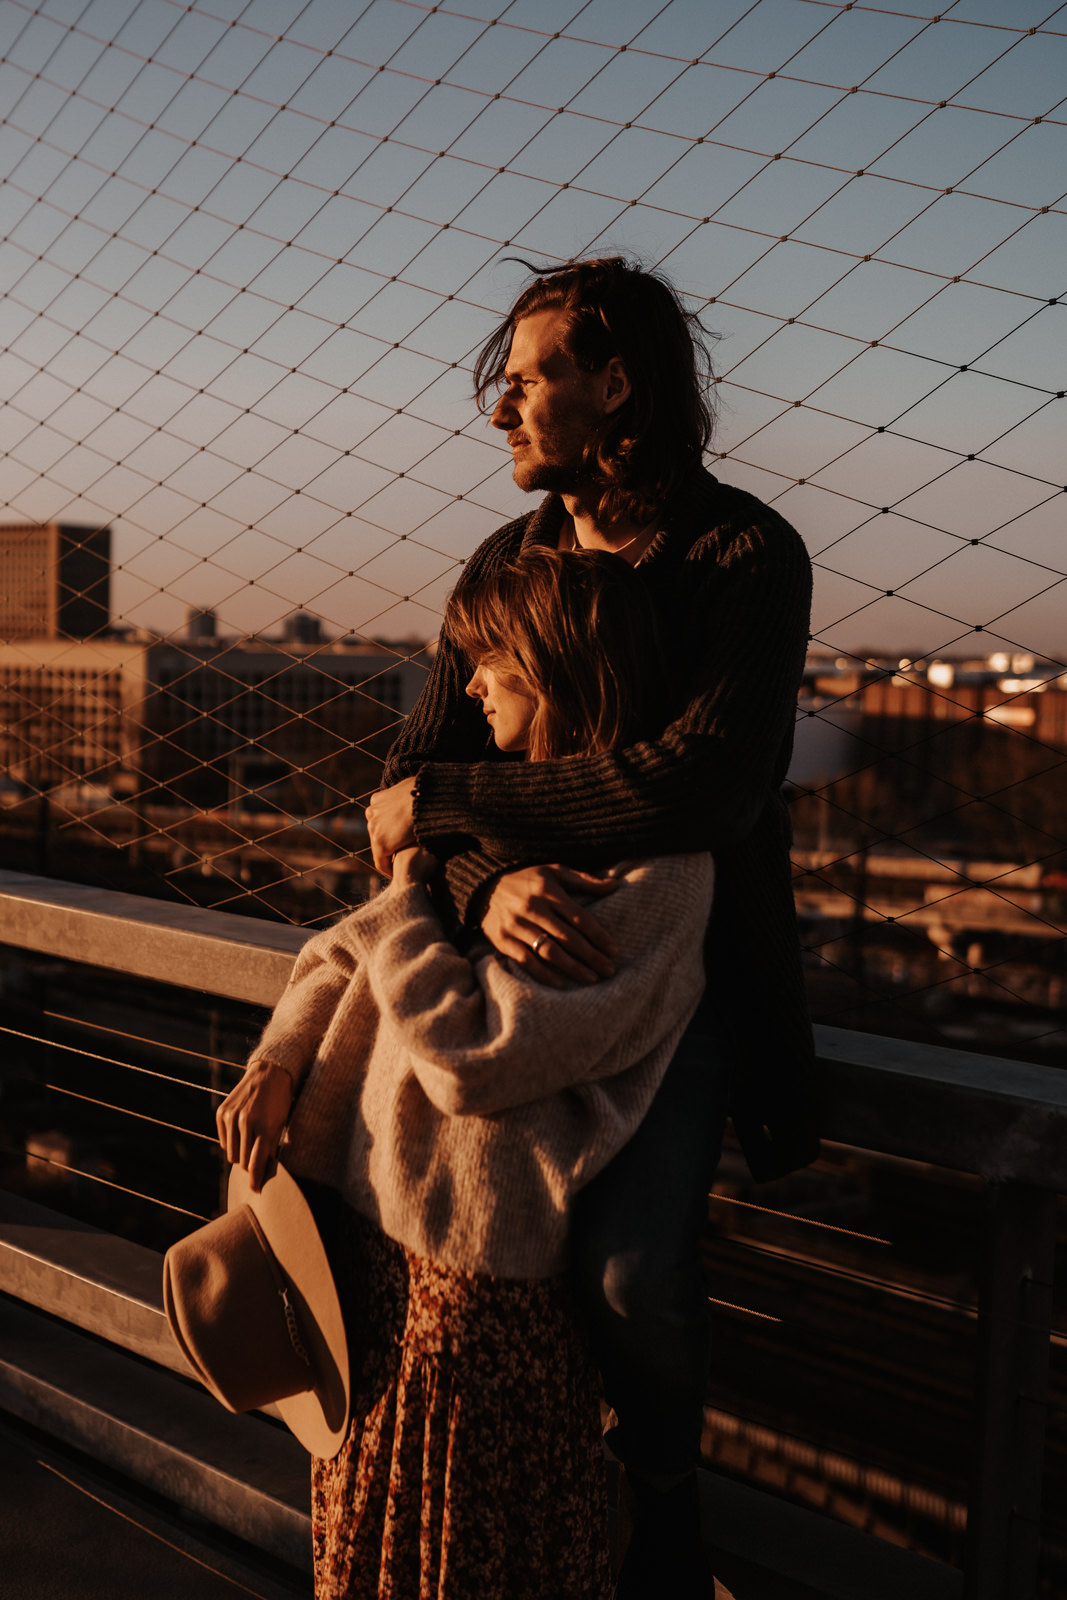 Rooftop Love Story by Caroline Knabe